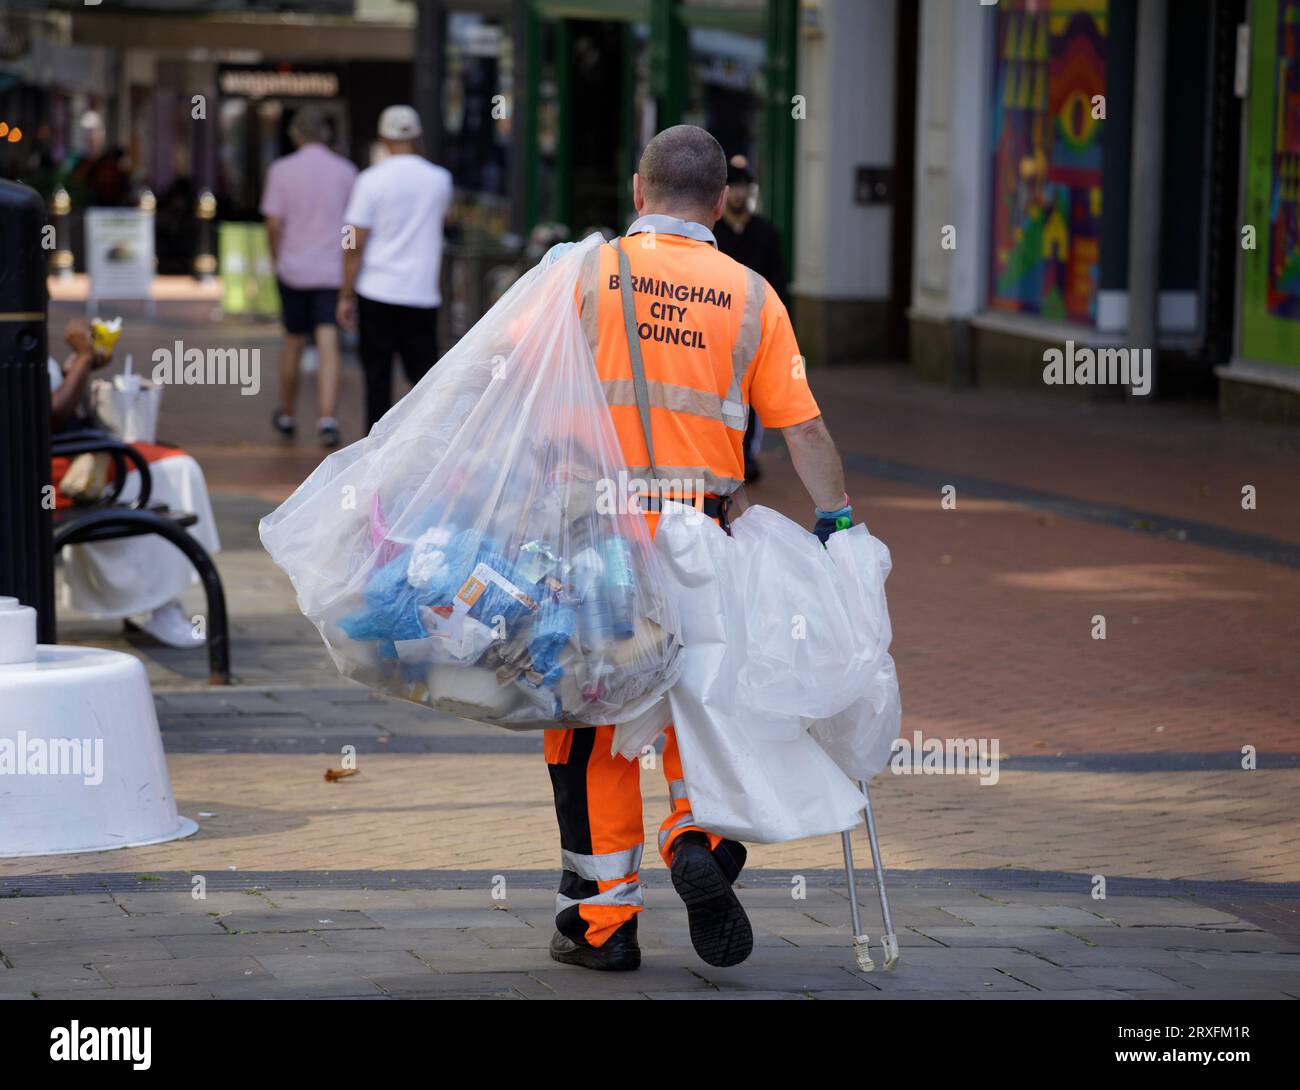 Un collecteur d'ordures travaillant pour le conseil municipal de Birmingham à New Street dans le centre-ville. Banque D'Images